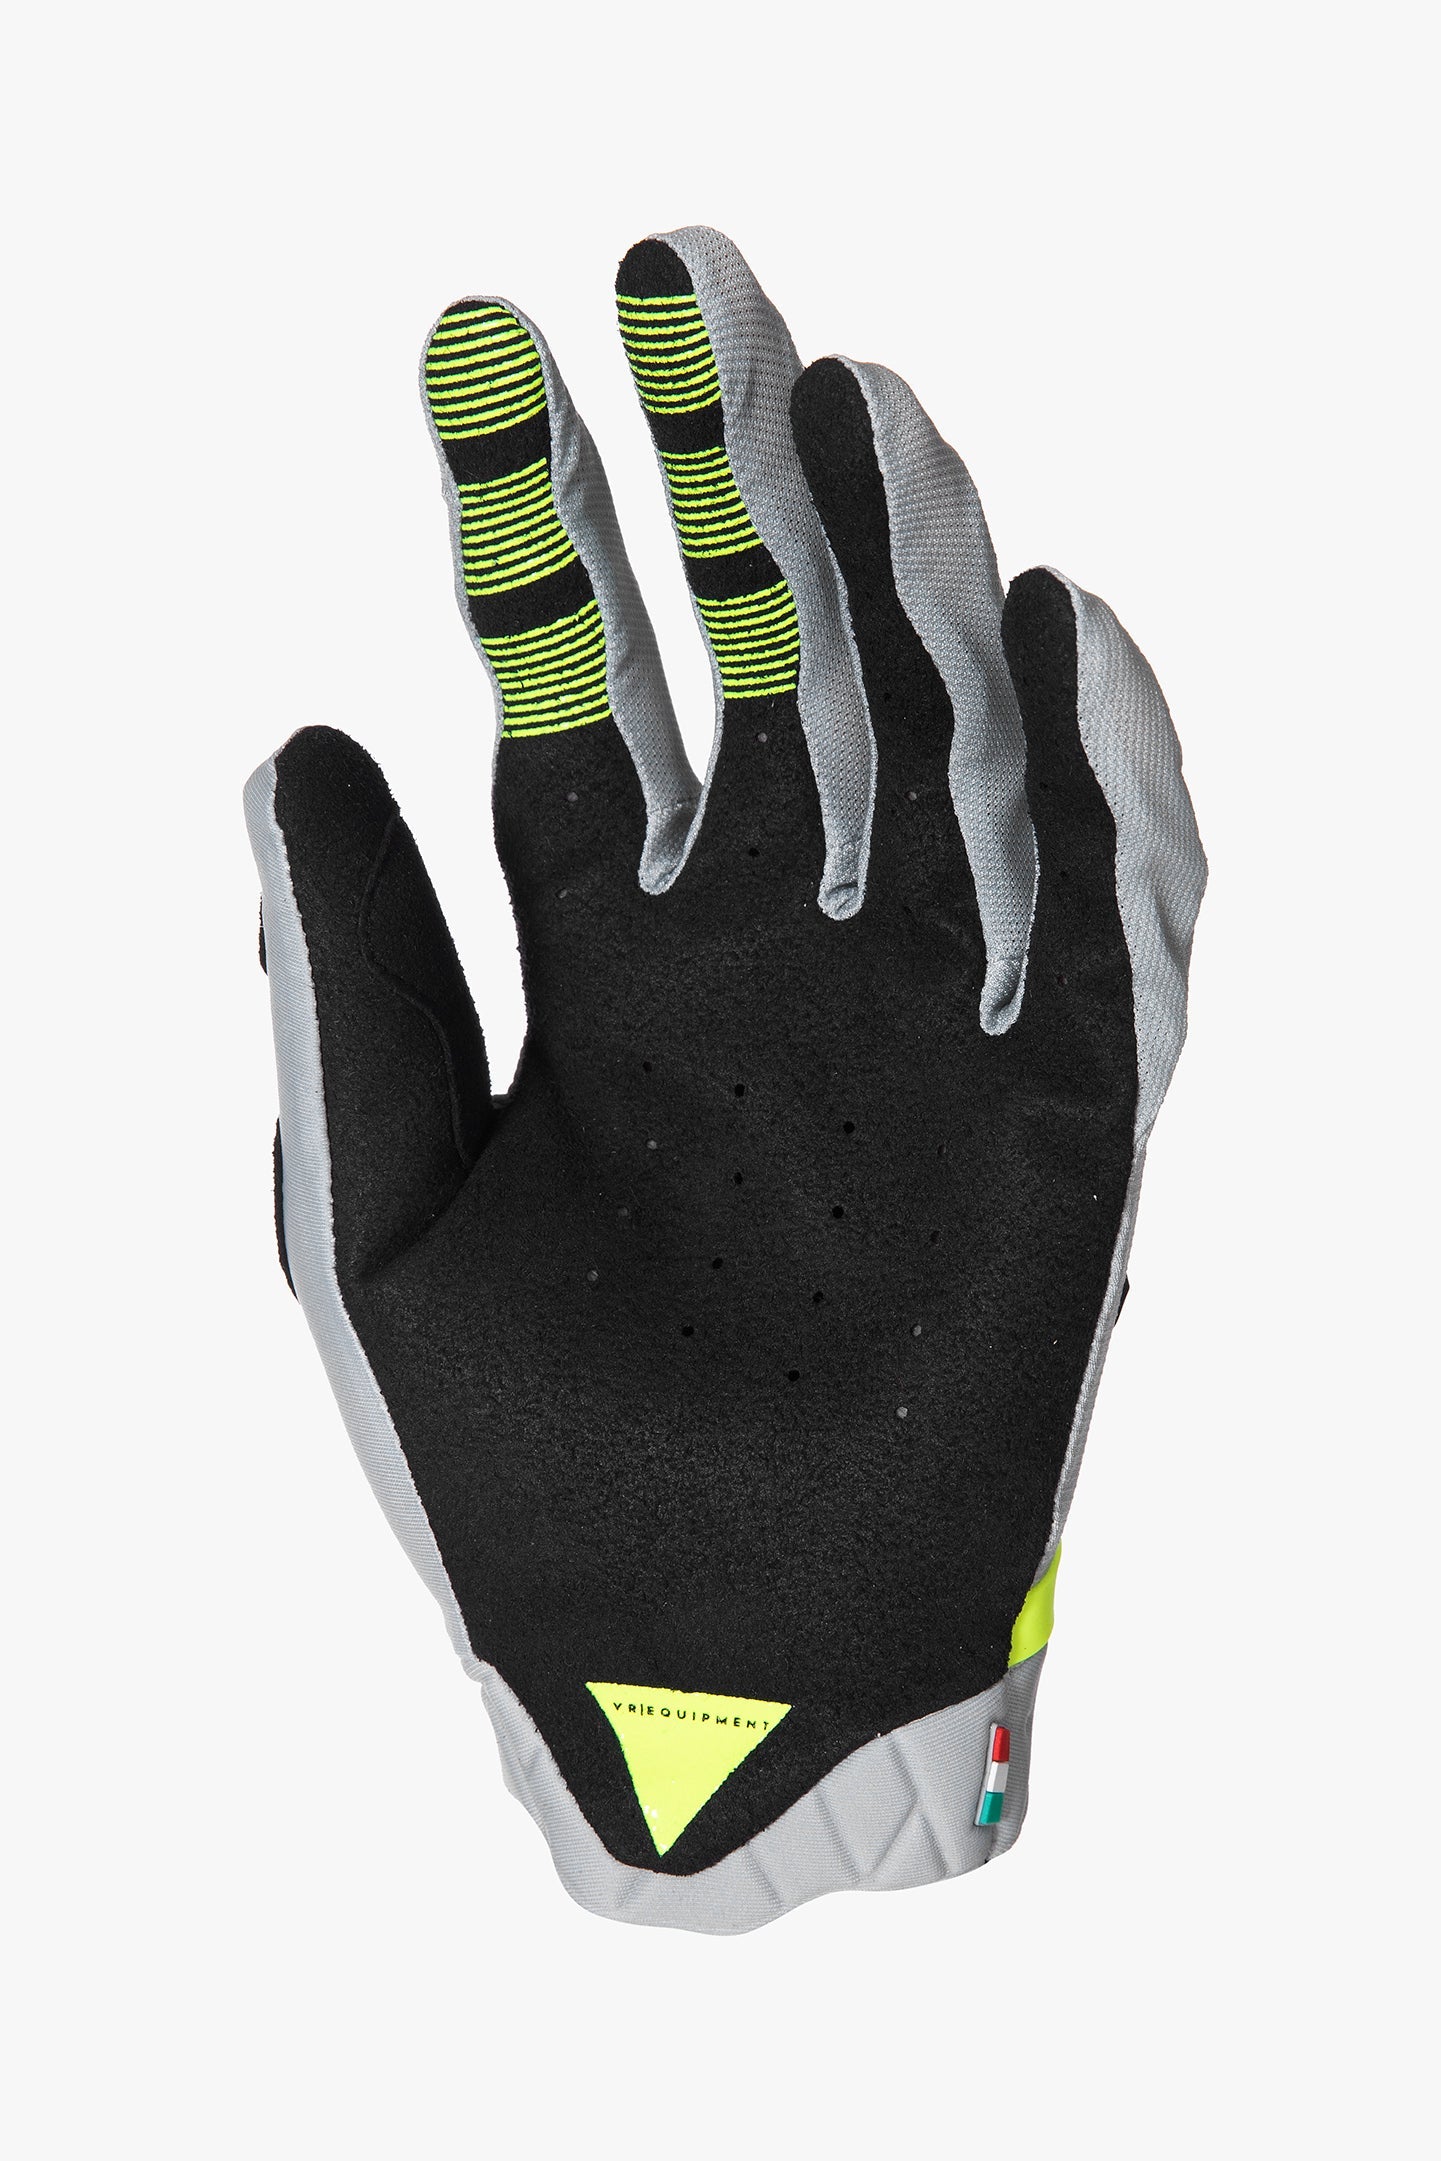 VR Equipment - MX Training Gloves